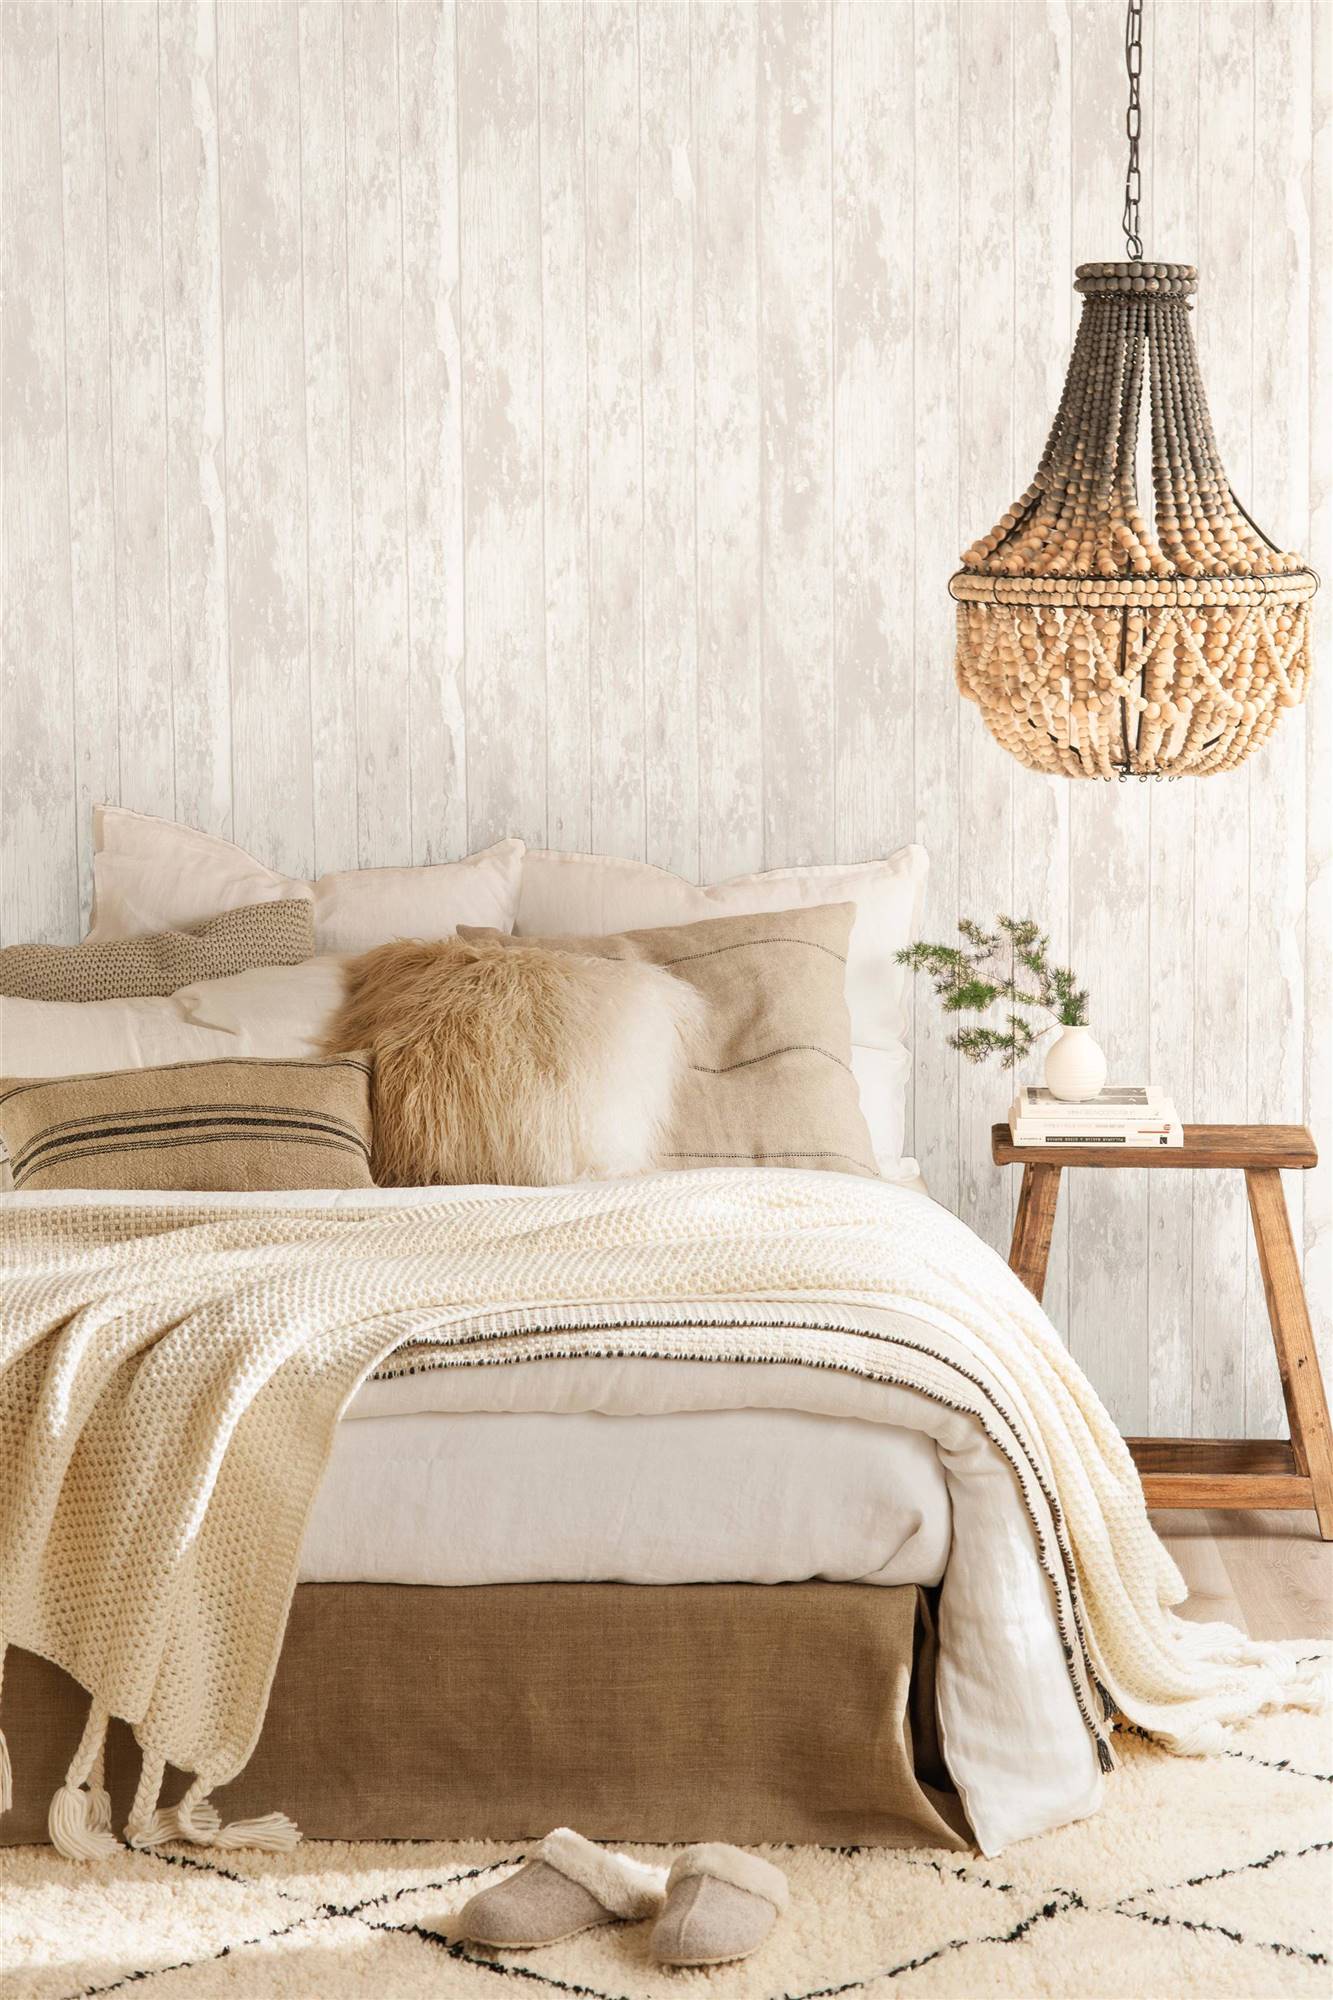 Un dormitorio invernal en blanco con textiles abrigados